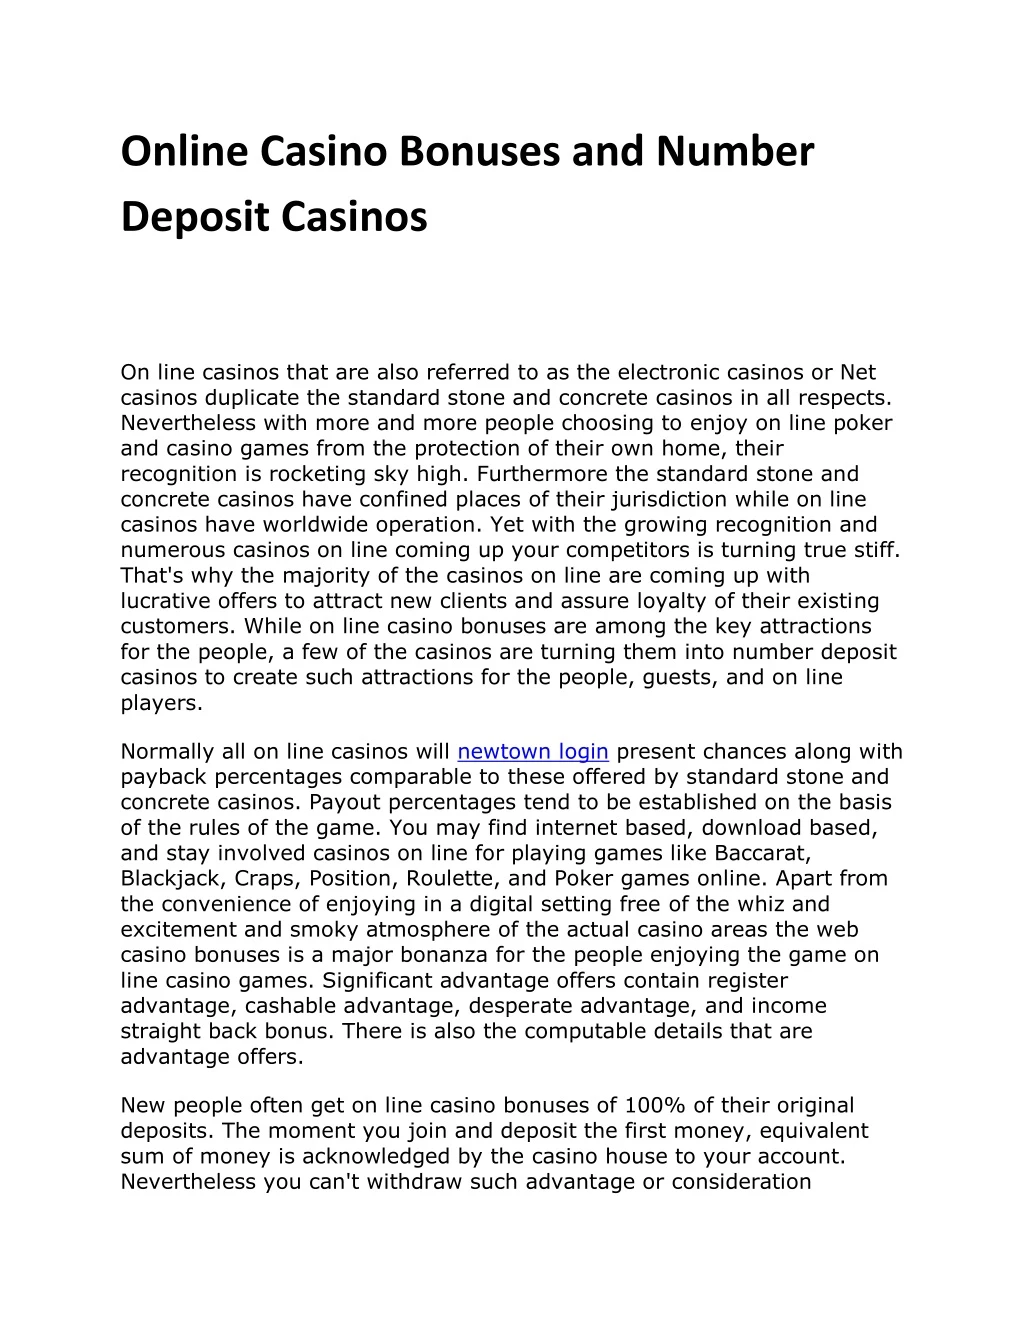 online casino bonuses and number deposit casinos n.